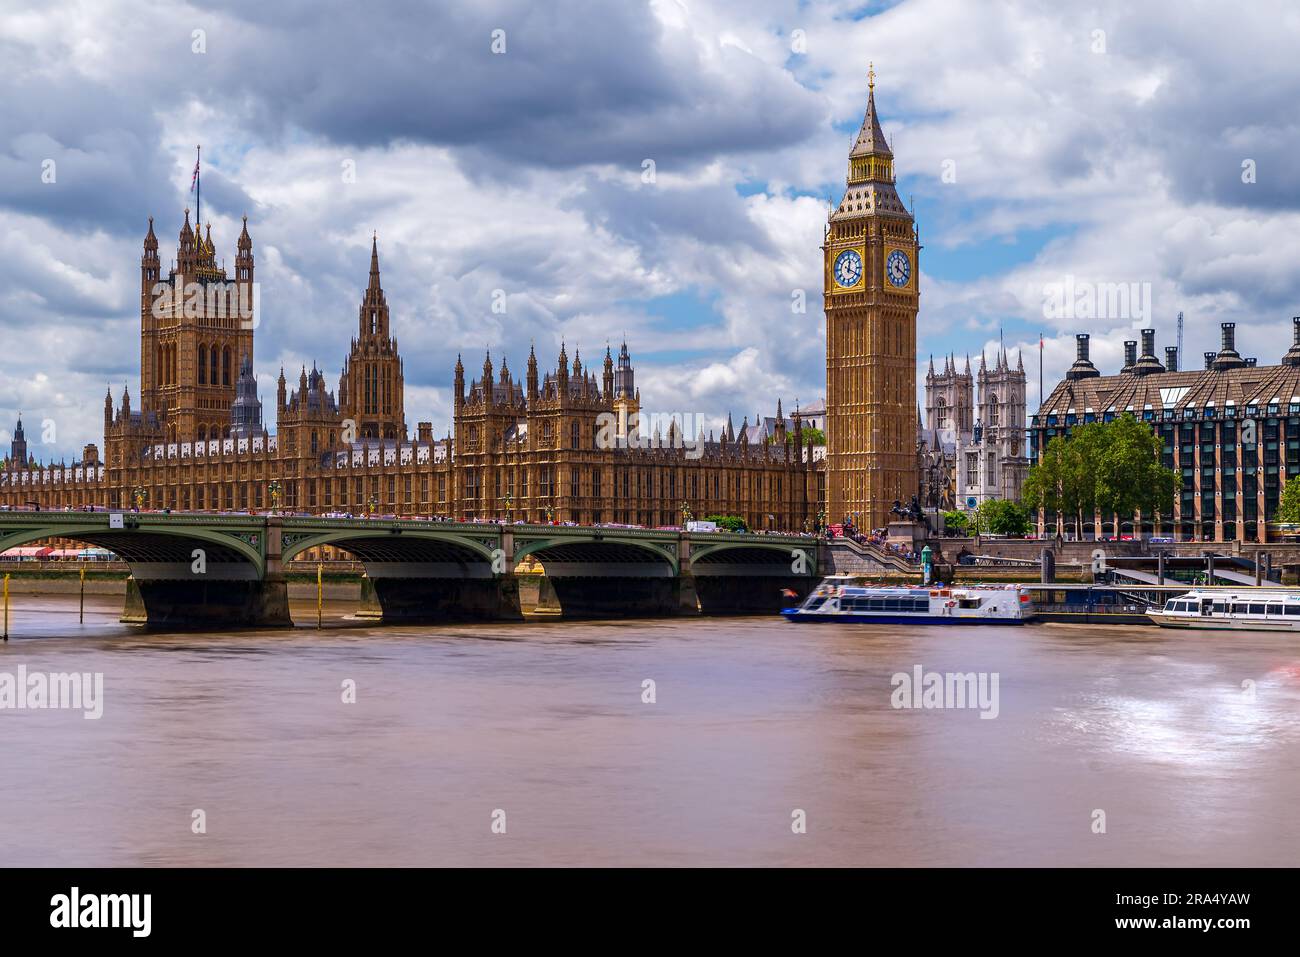 Incredibile paesaggio urbano londinese che include il Big Ben, il parlamento del governo. Le torri dell'abbazia di Westminster sono sullo sfondo. Il Tamigi e le onde Foto Stock